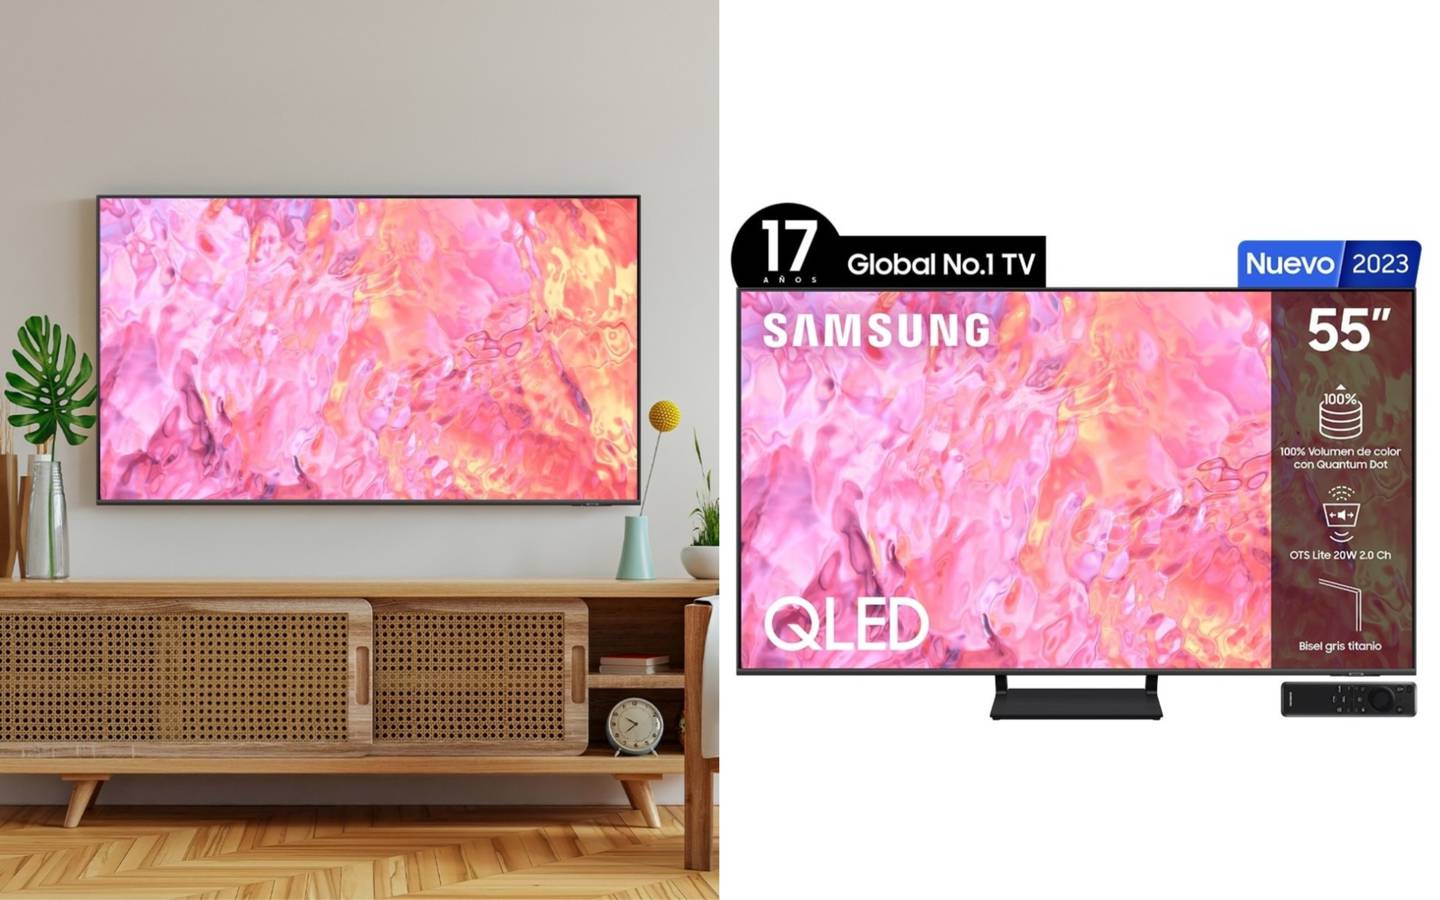 No sabes qué regalarle a mamá por el Día de las Madres este 10 de mayo, Liverpool pone en super oferta la televisión Samsung QLED Smart TV de 55 pulgadas 4K.